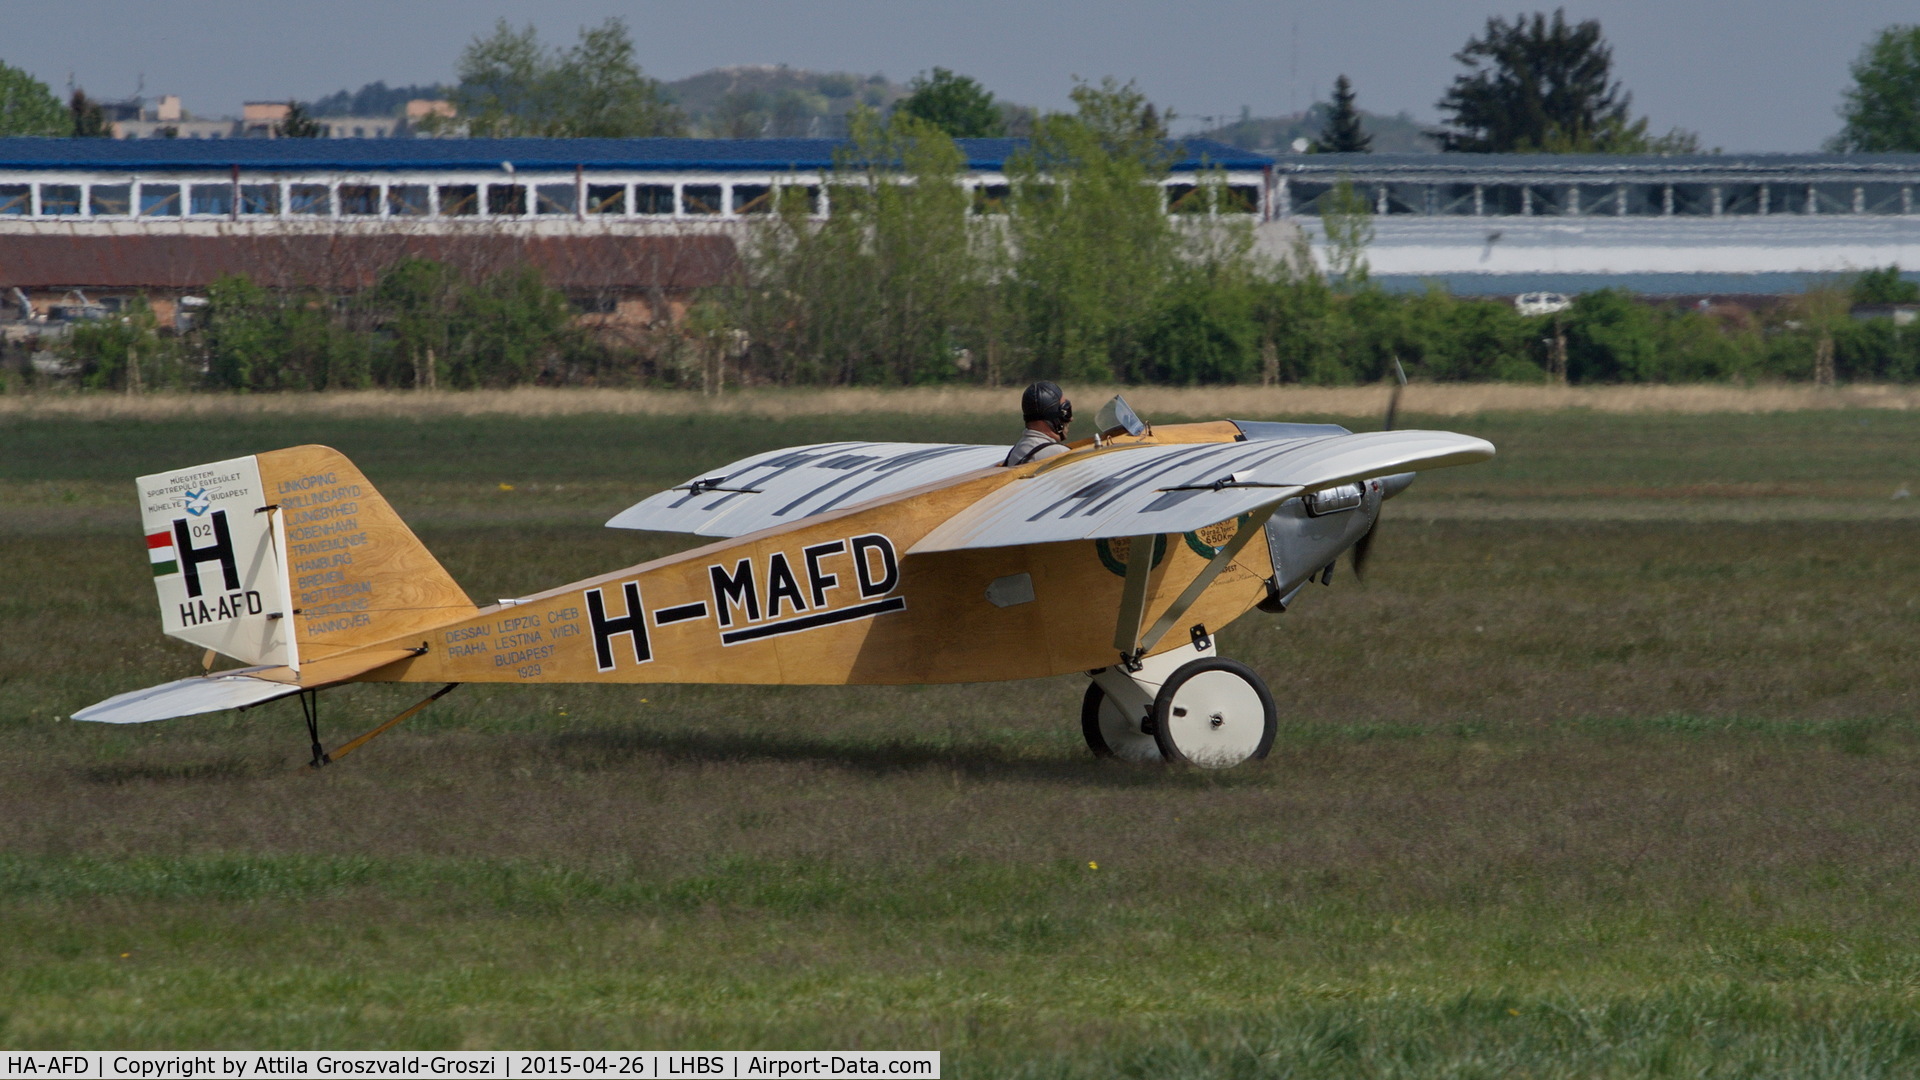 HA-AFD, 2005 Váradi László L-2 Roma replica C/N 001, Budaörs Airport, Hungary. Gold Timer Fundanation airshow